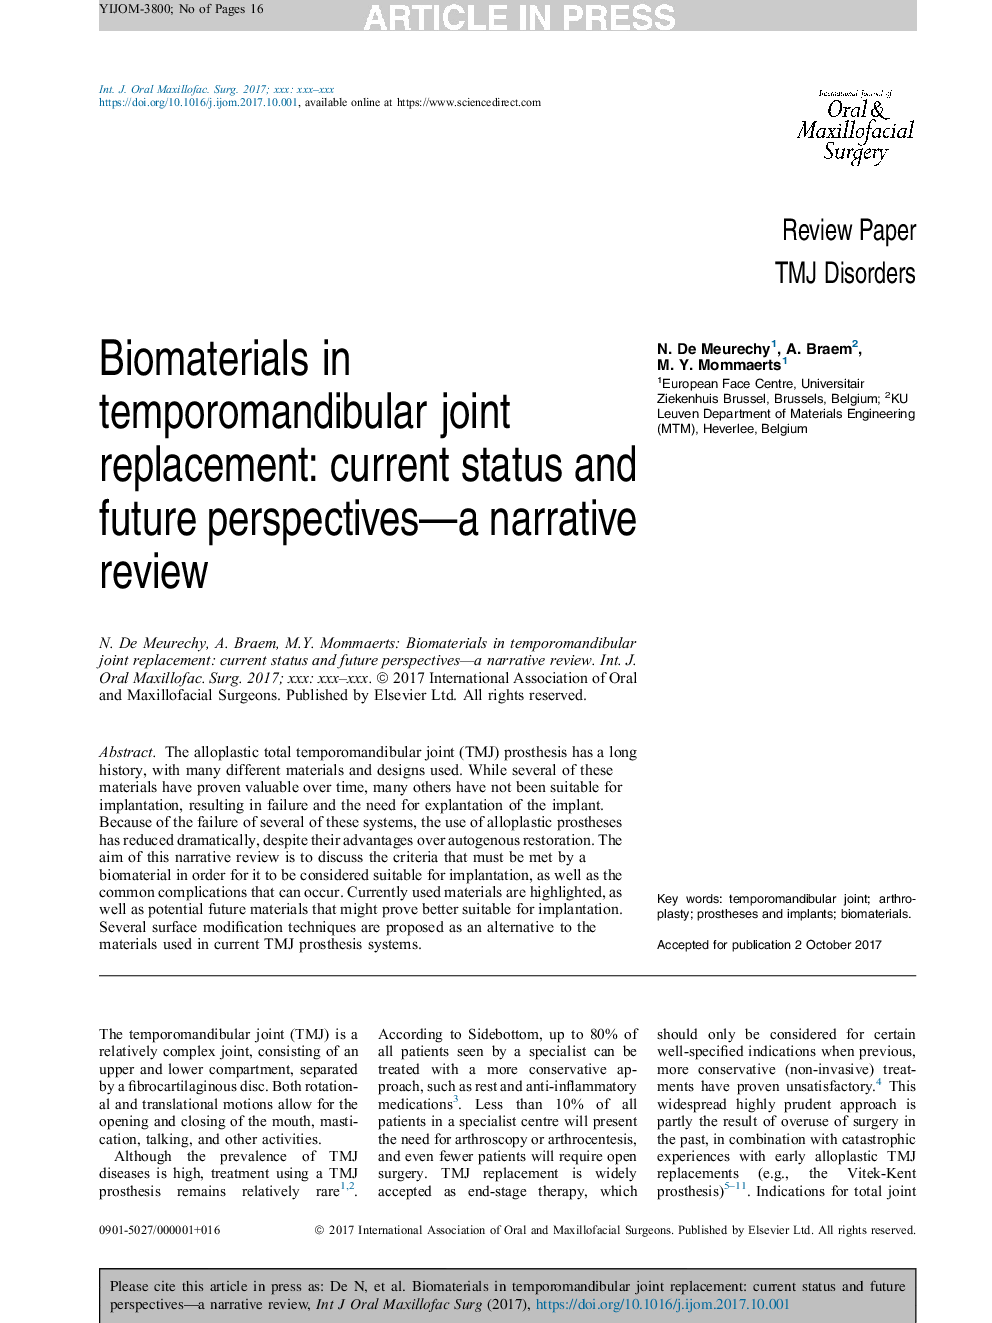 مواد بیولوژیکی در جایگزینی مفصل مفصلی مفصلی: وضعیت فعلی و دیدگاه های آینده - یک بررسی روایت 